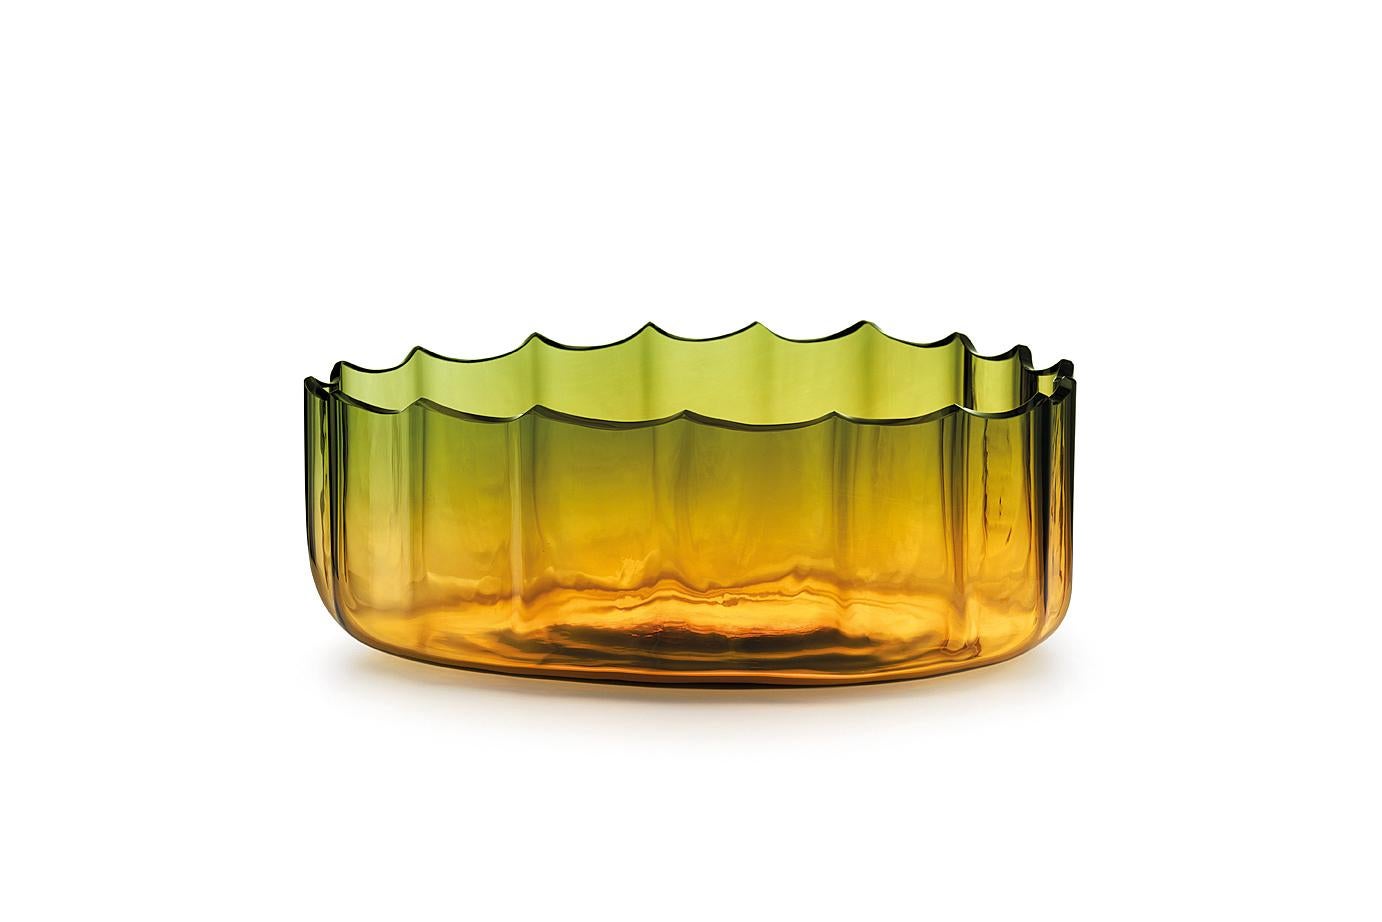 For Sale: Orange (017VRAMLS) Small Mare Coppo Lucido in Murano Glass by Davide Bruno